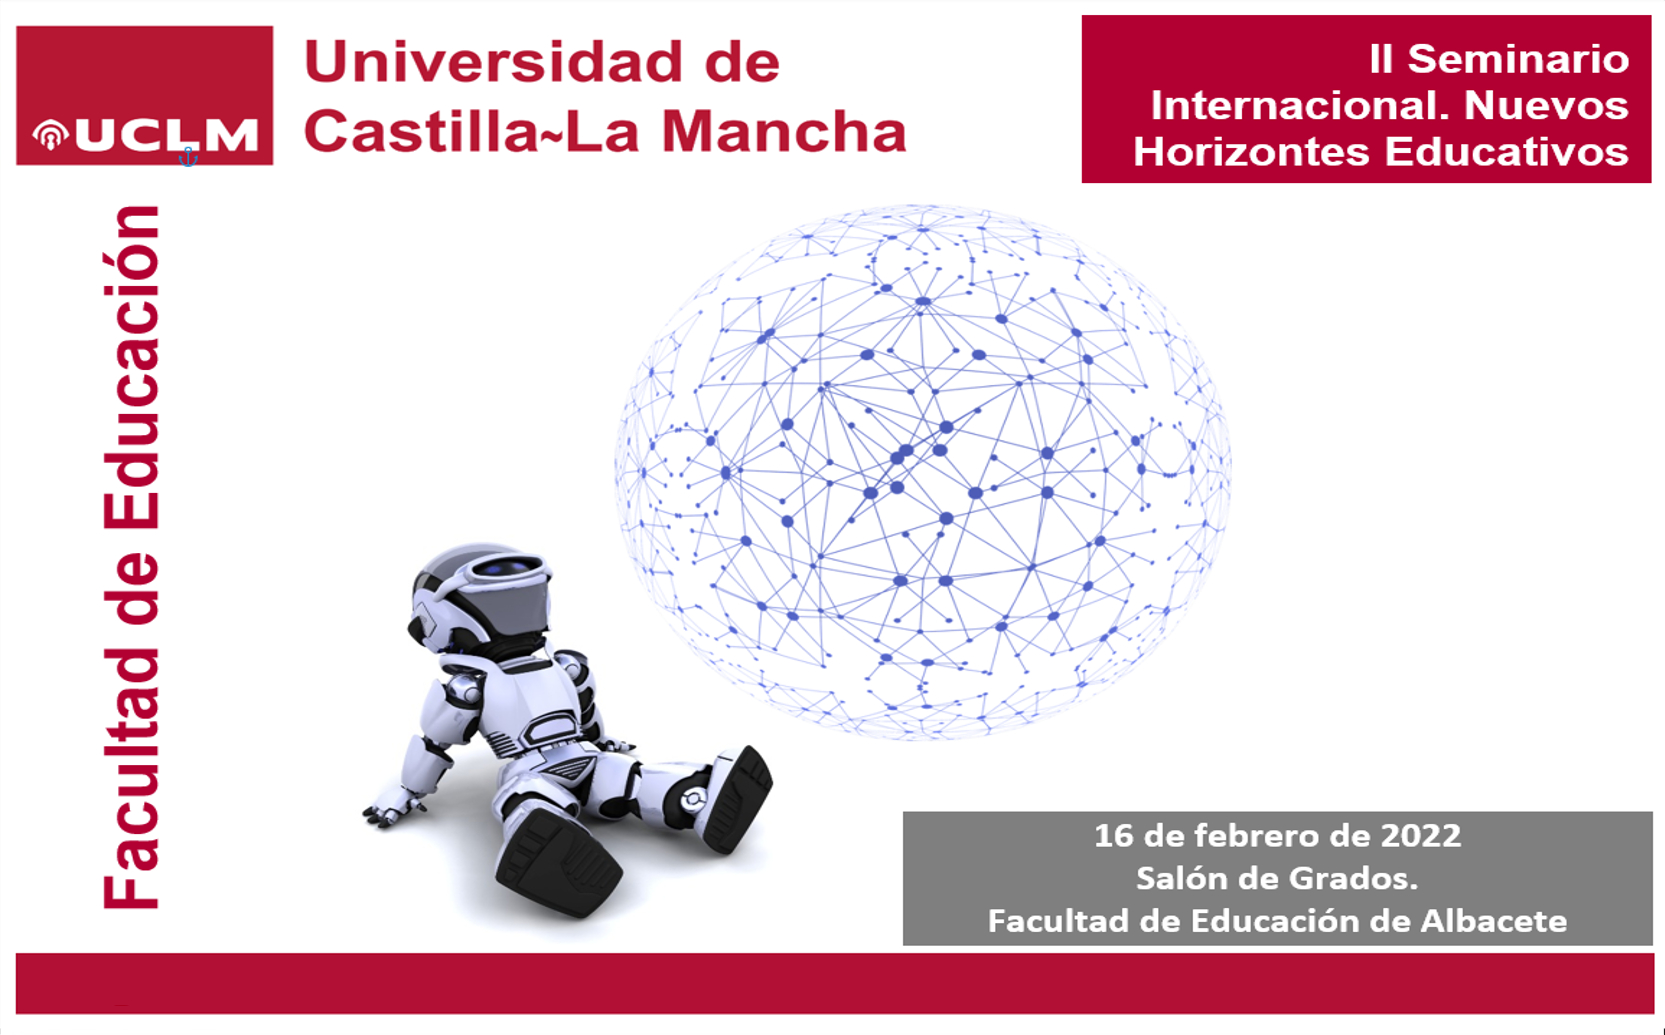 II Seminario Internacional. Nuevos Horizontes Educativos